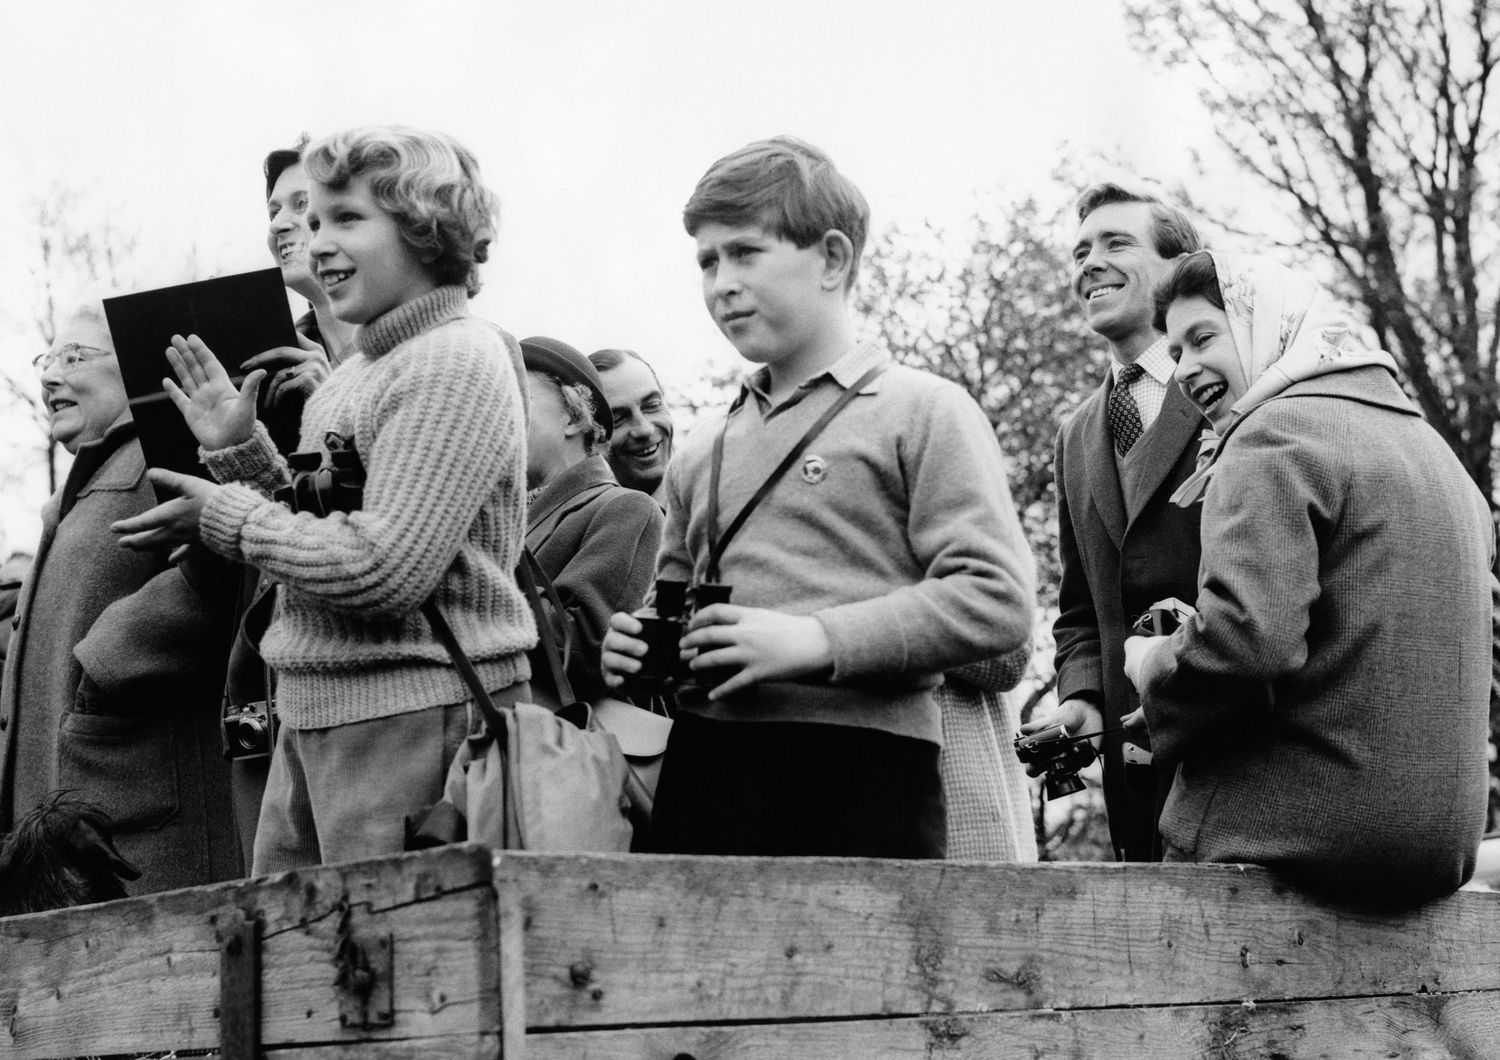 La regina Elisabetta, con il capo coperto da un foulard, assiste a una gara campestre nel 1961 a Badminton. In primo piano, col binocolo, il principe Carlo